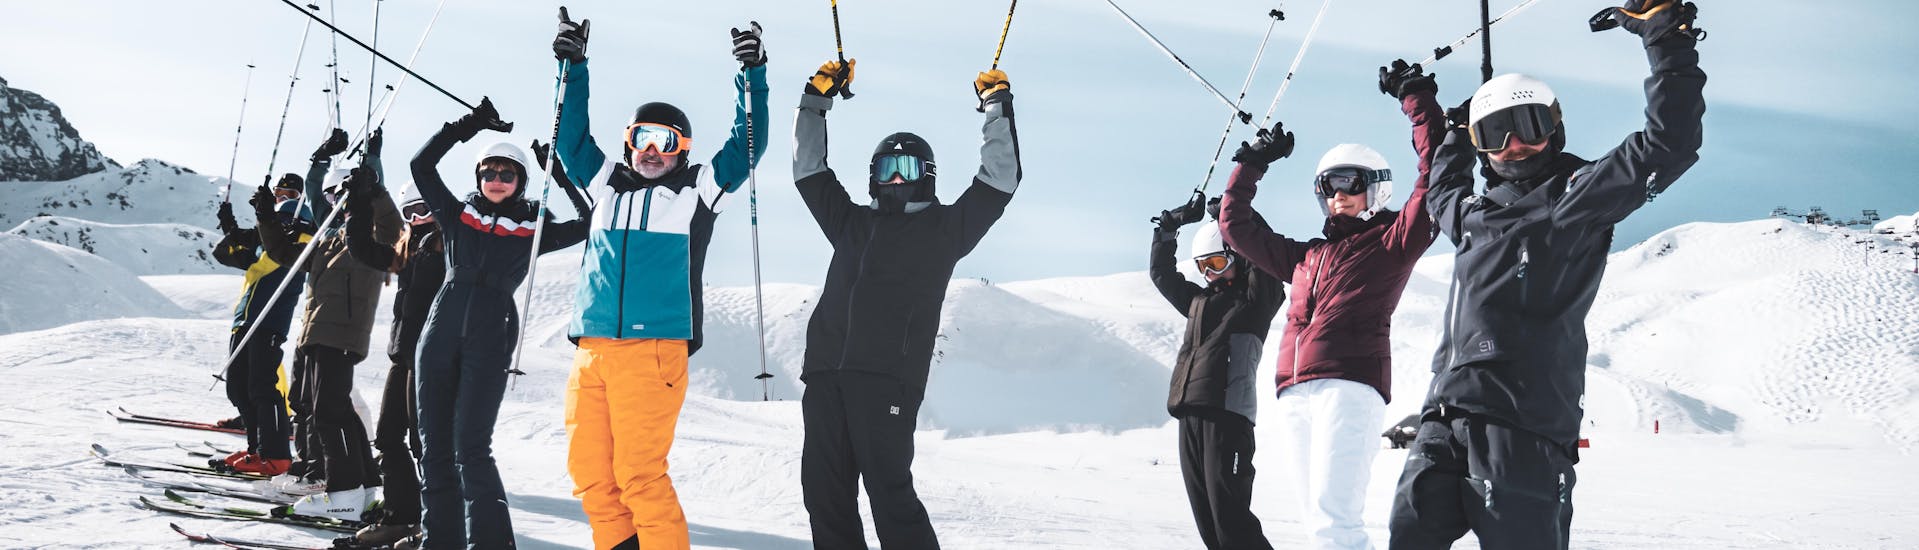 Clases de esquí para adultos a partir de 13 años para todos los niveles.